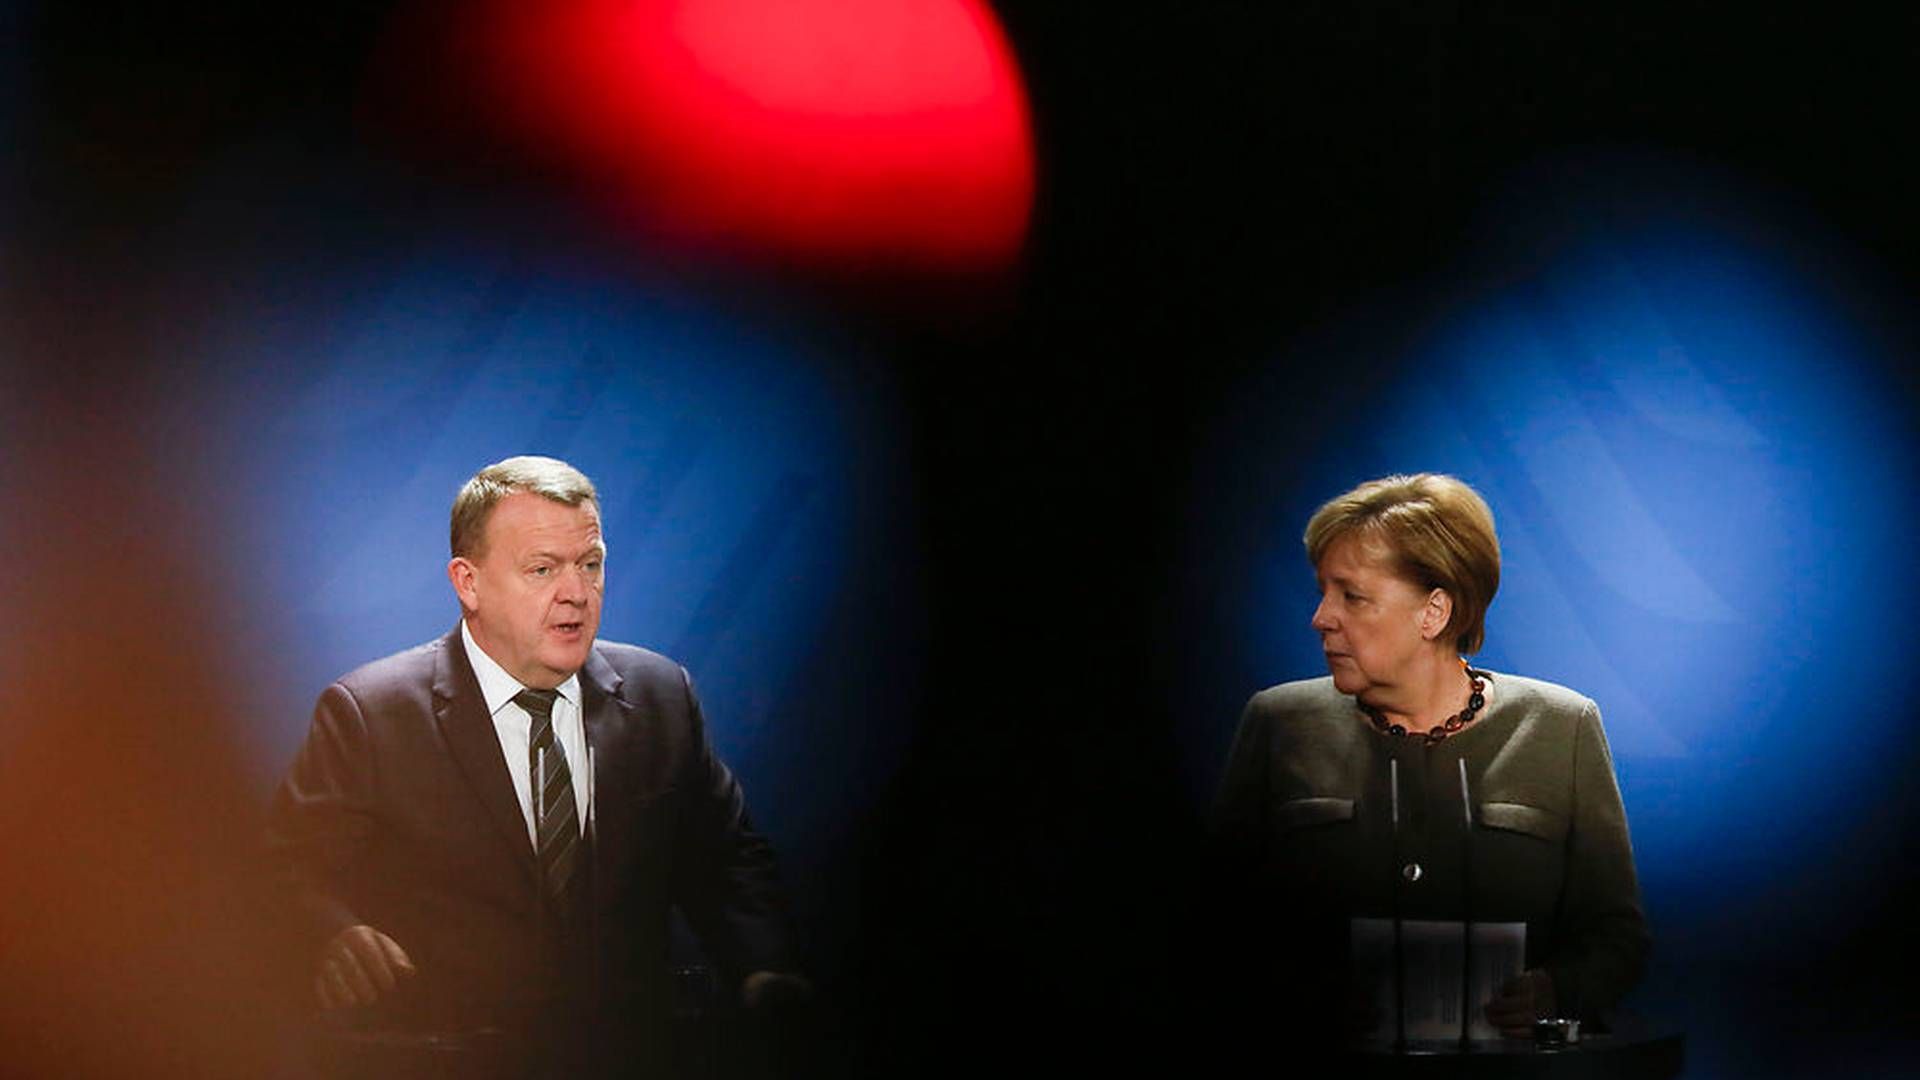 Statsminister Lars Løkke Rasmussen (V) under pressemødet med Tysklands forbundskansler Angela Merkel i forbindelse med besøget | Foto: Ritzau Scanpix/AP/Markus Schreiber